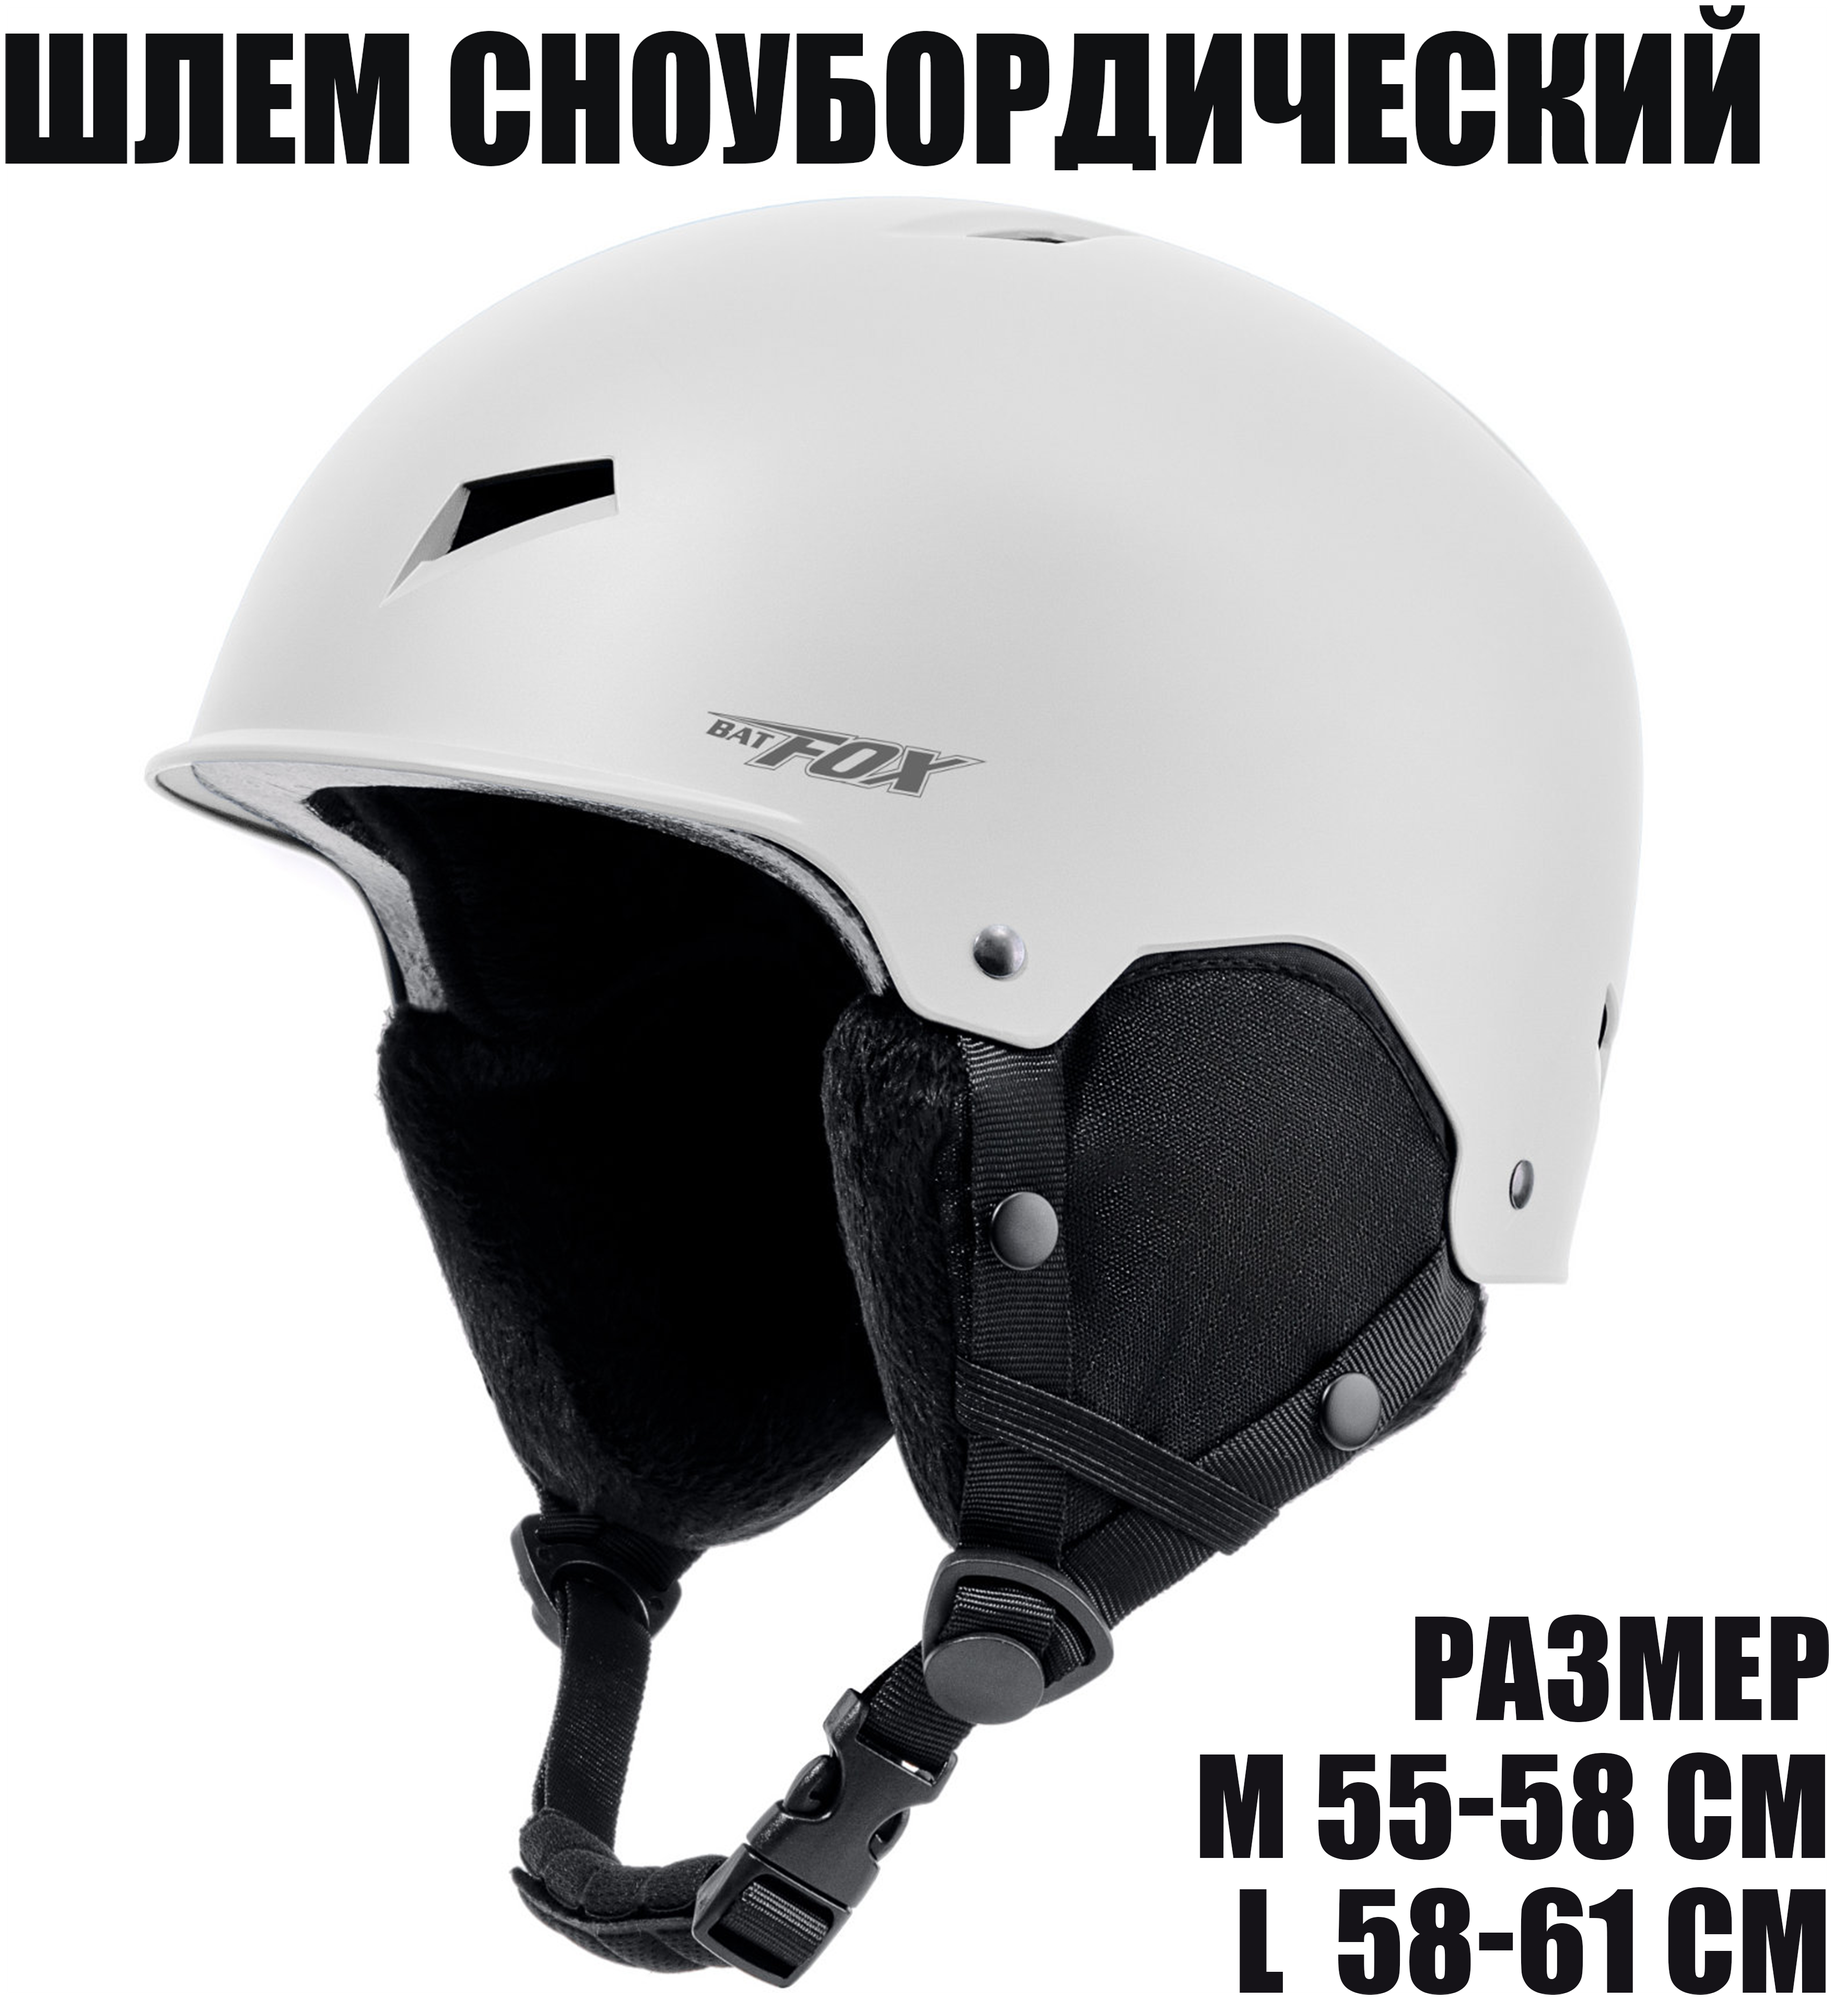 Горнолыжный сноубордический шлем BatFox, размер S (48 - 54 см), белый цвет